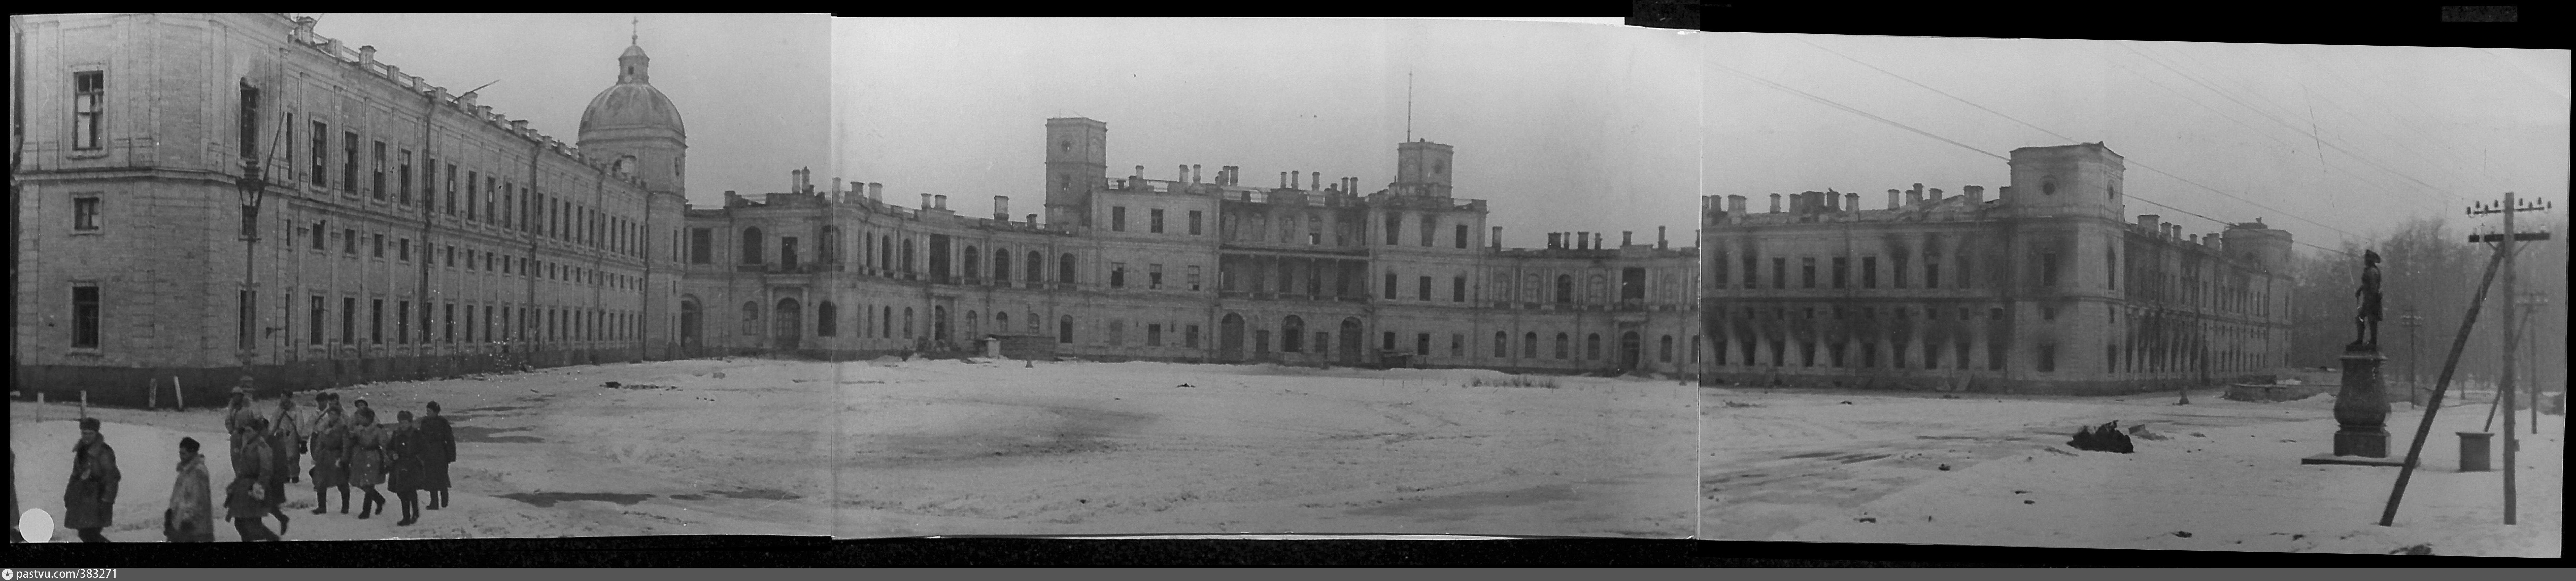 гатчинский дворец во время войны